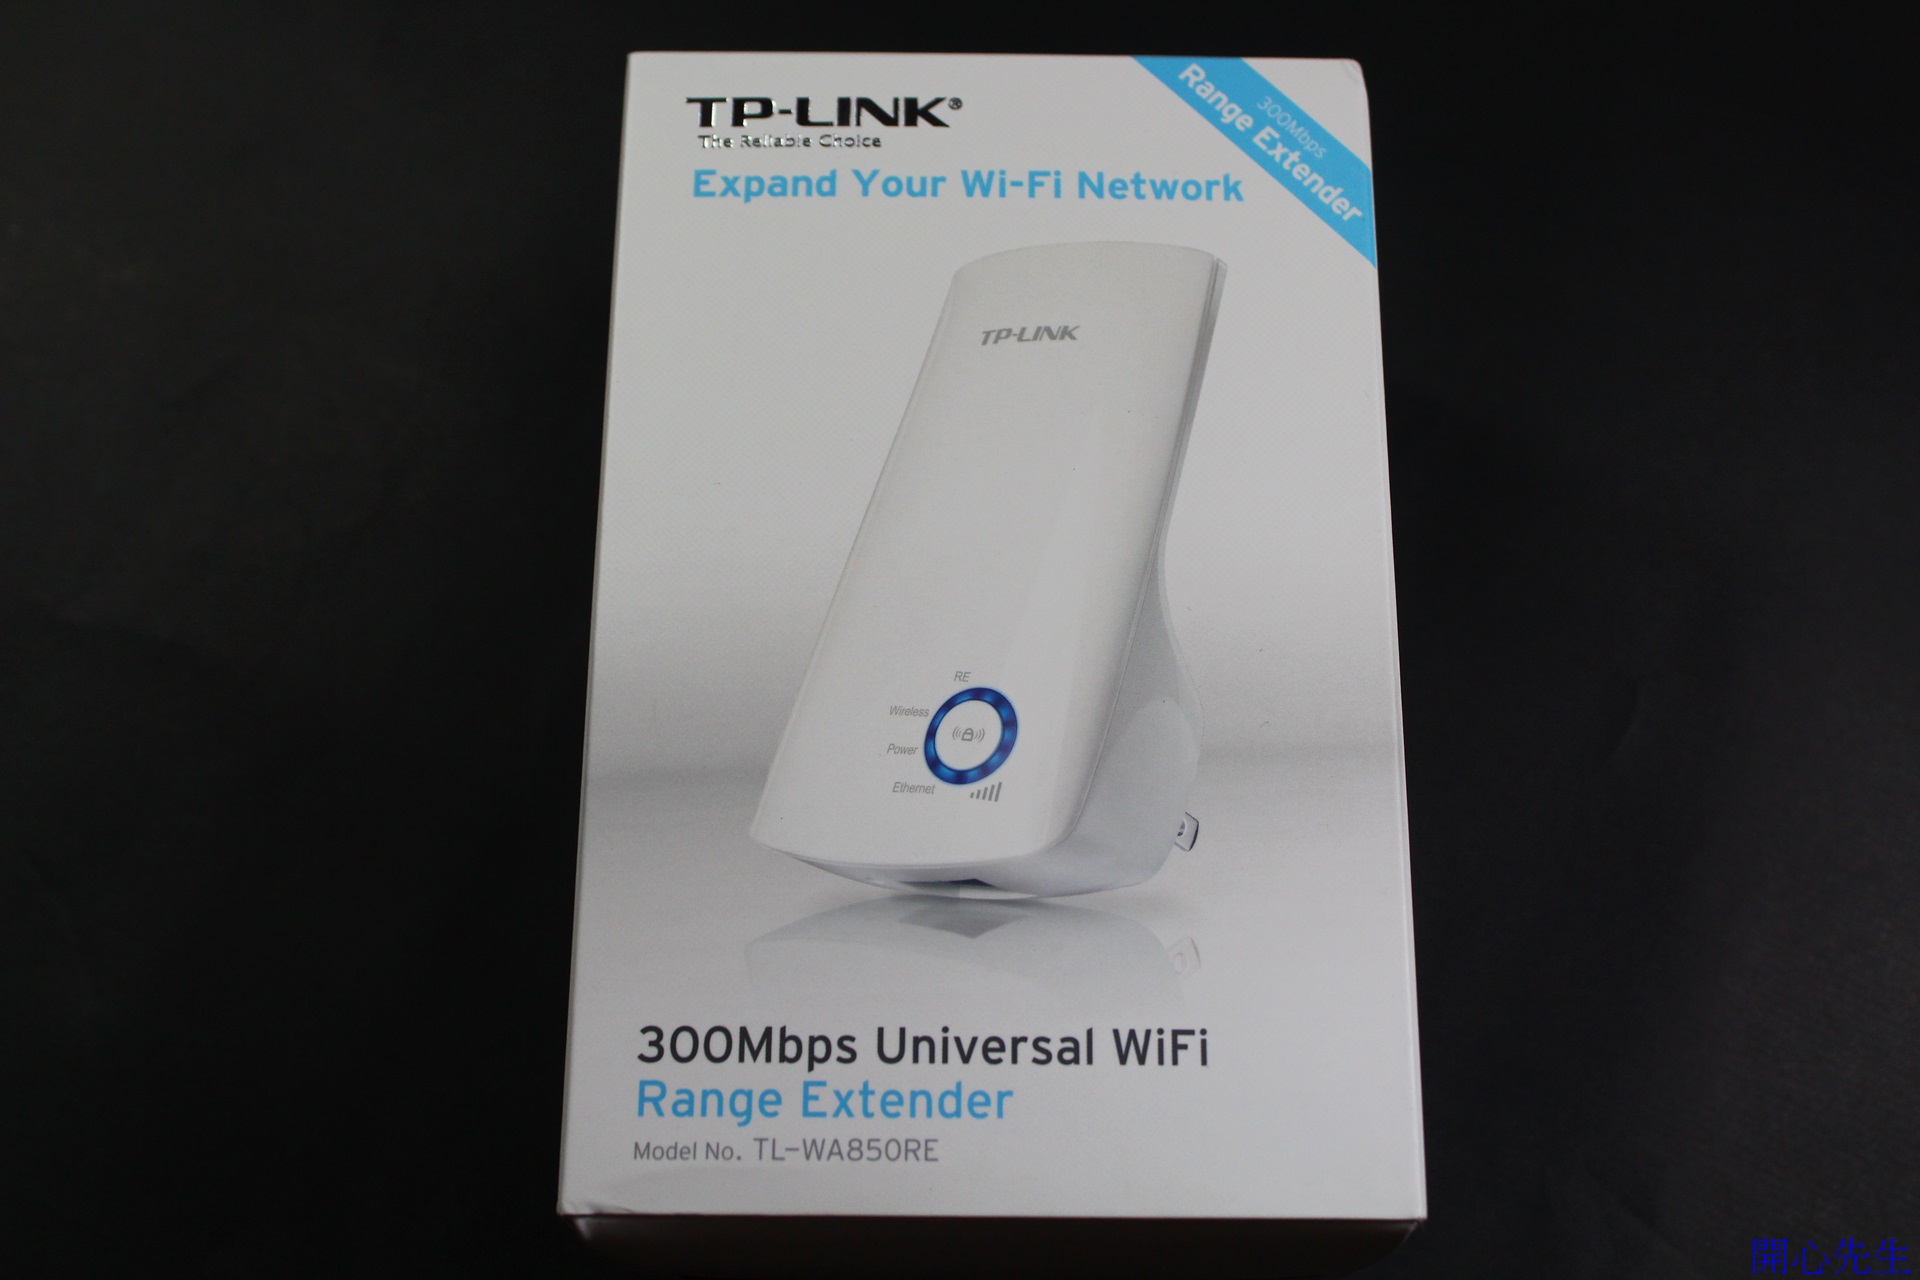 心得] TP-LINK TL-WA850RE WiFi訊號擴展器延伸無線訊號更可以讓有線裝置變無線上網| T17 討論區- 一起分享好東西